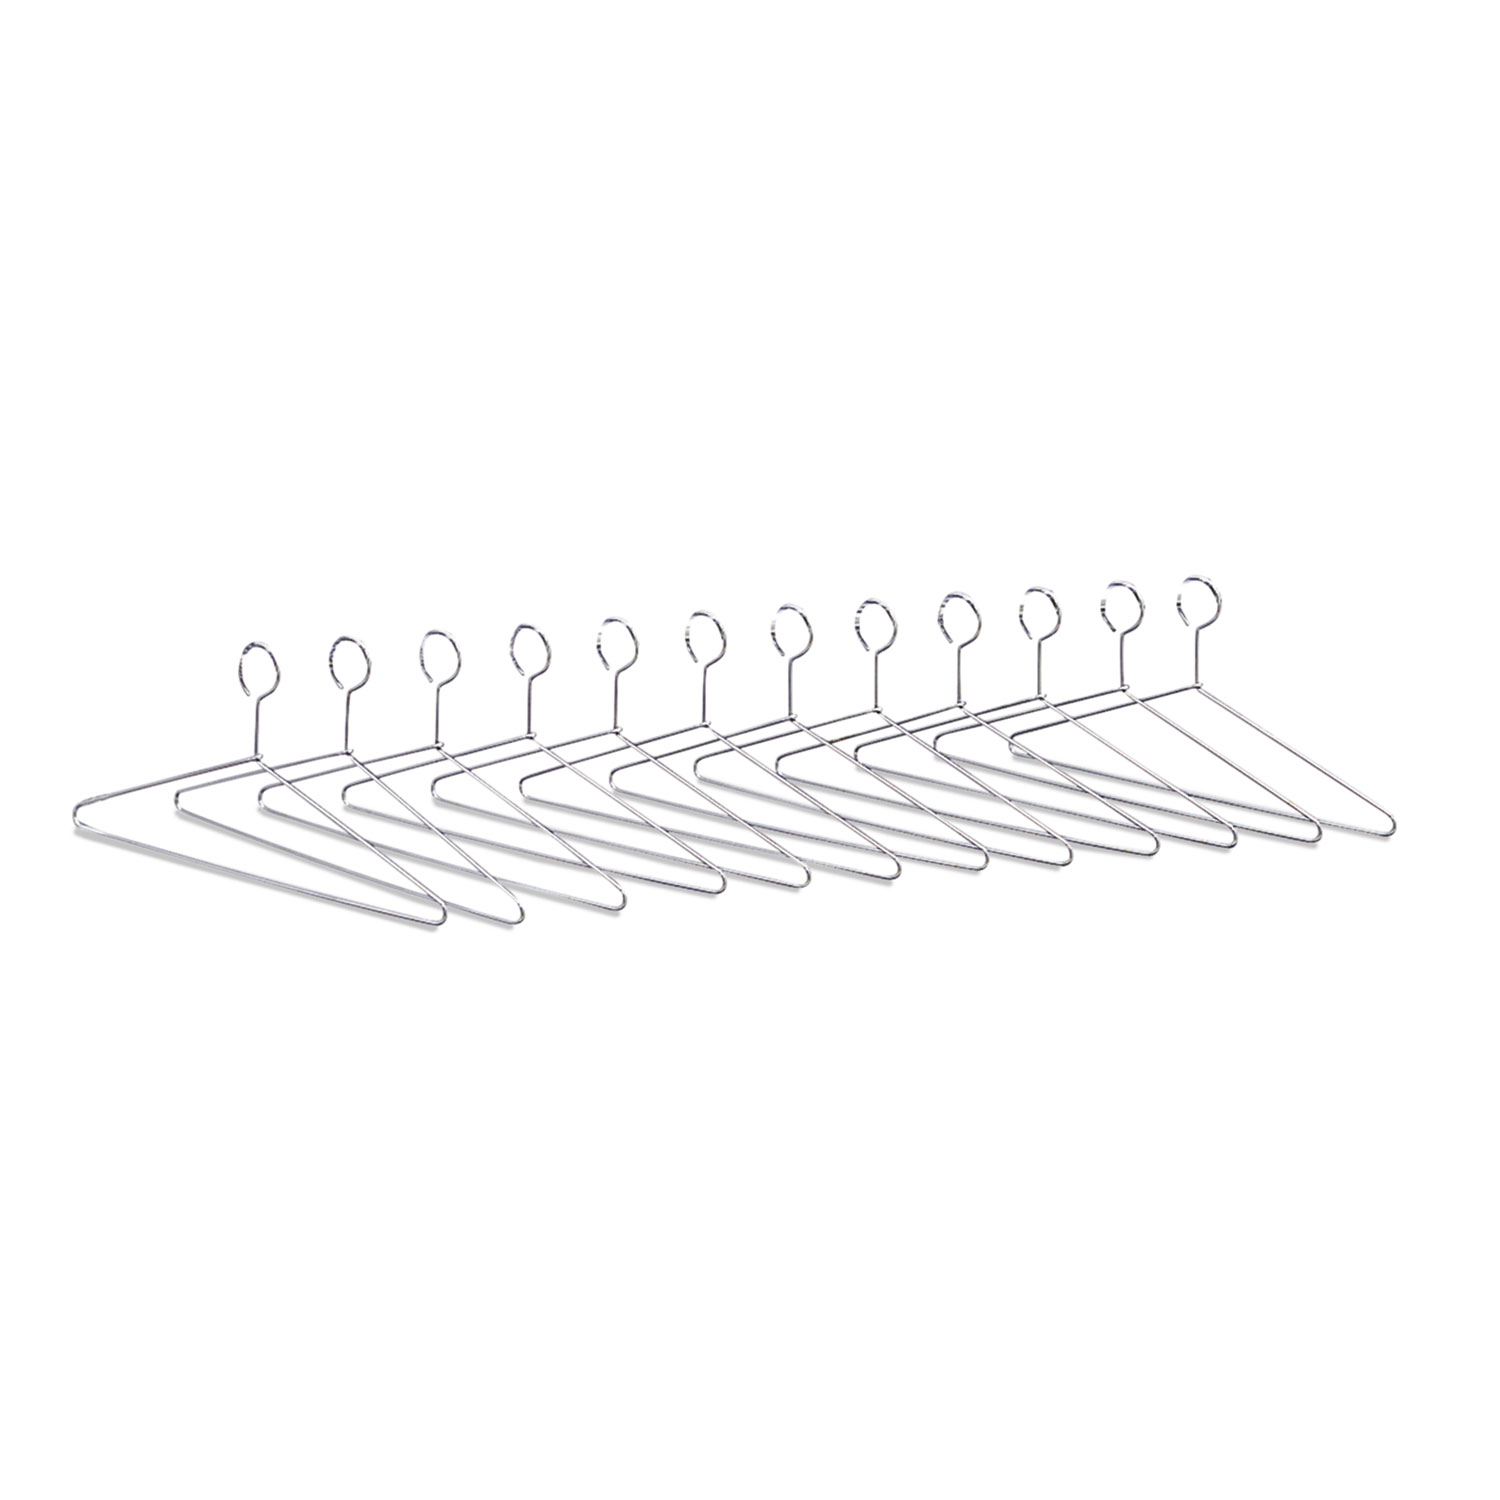 Hangers for Safco Shelf Rack, 17